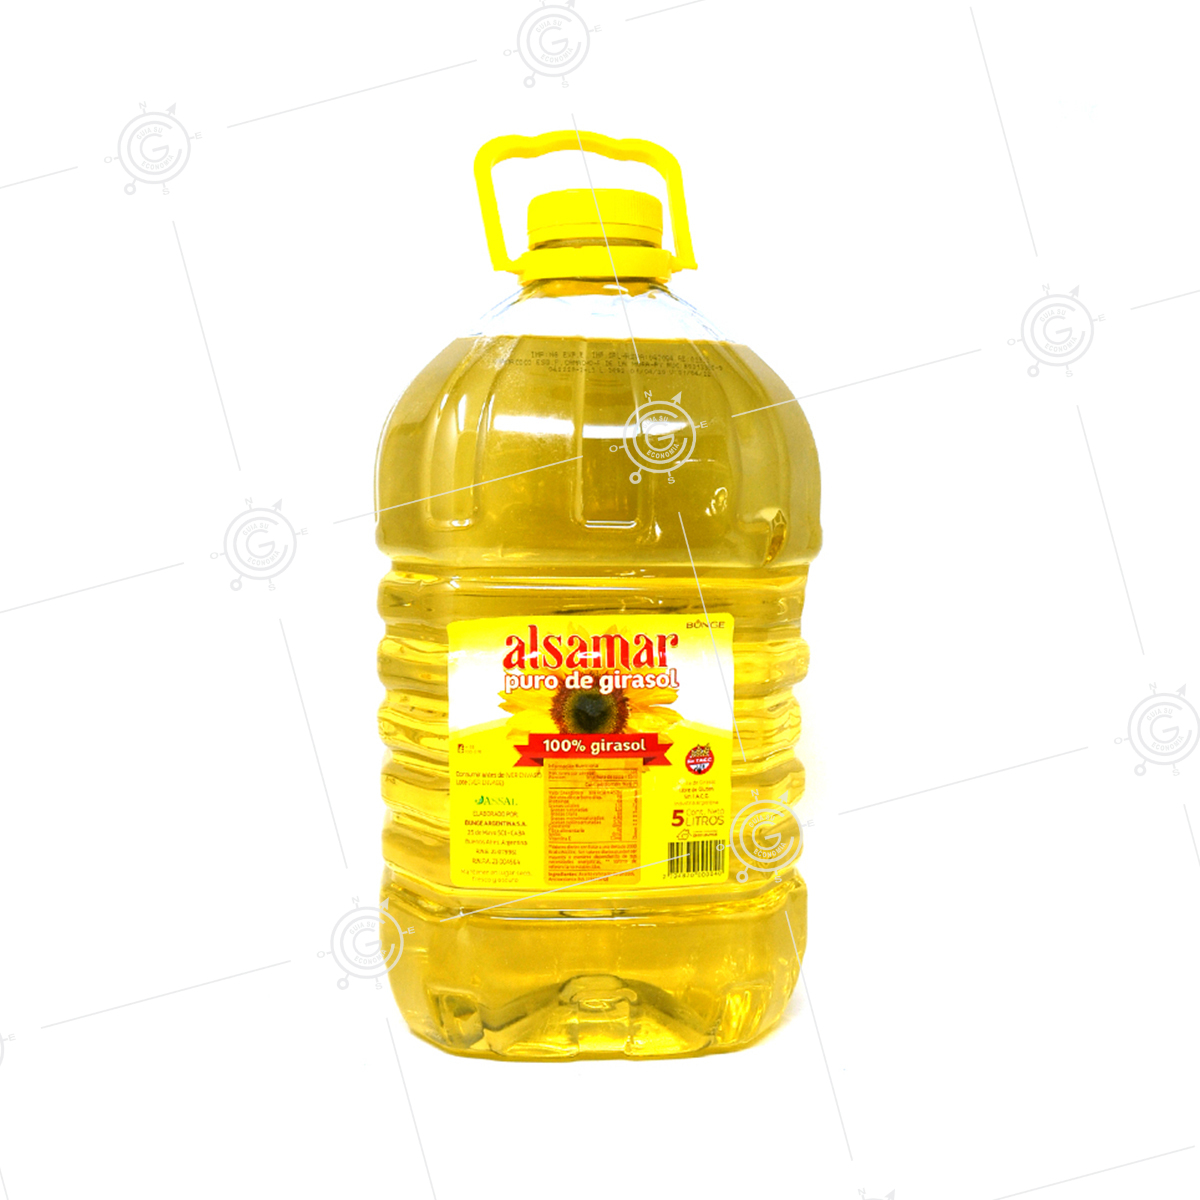 Aceite de oliva virgen extra 5 litros PET (garrafa de plástico) - Molea  Olearia